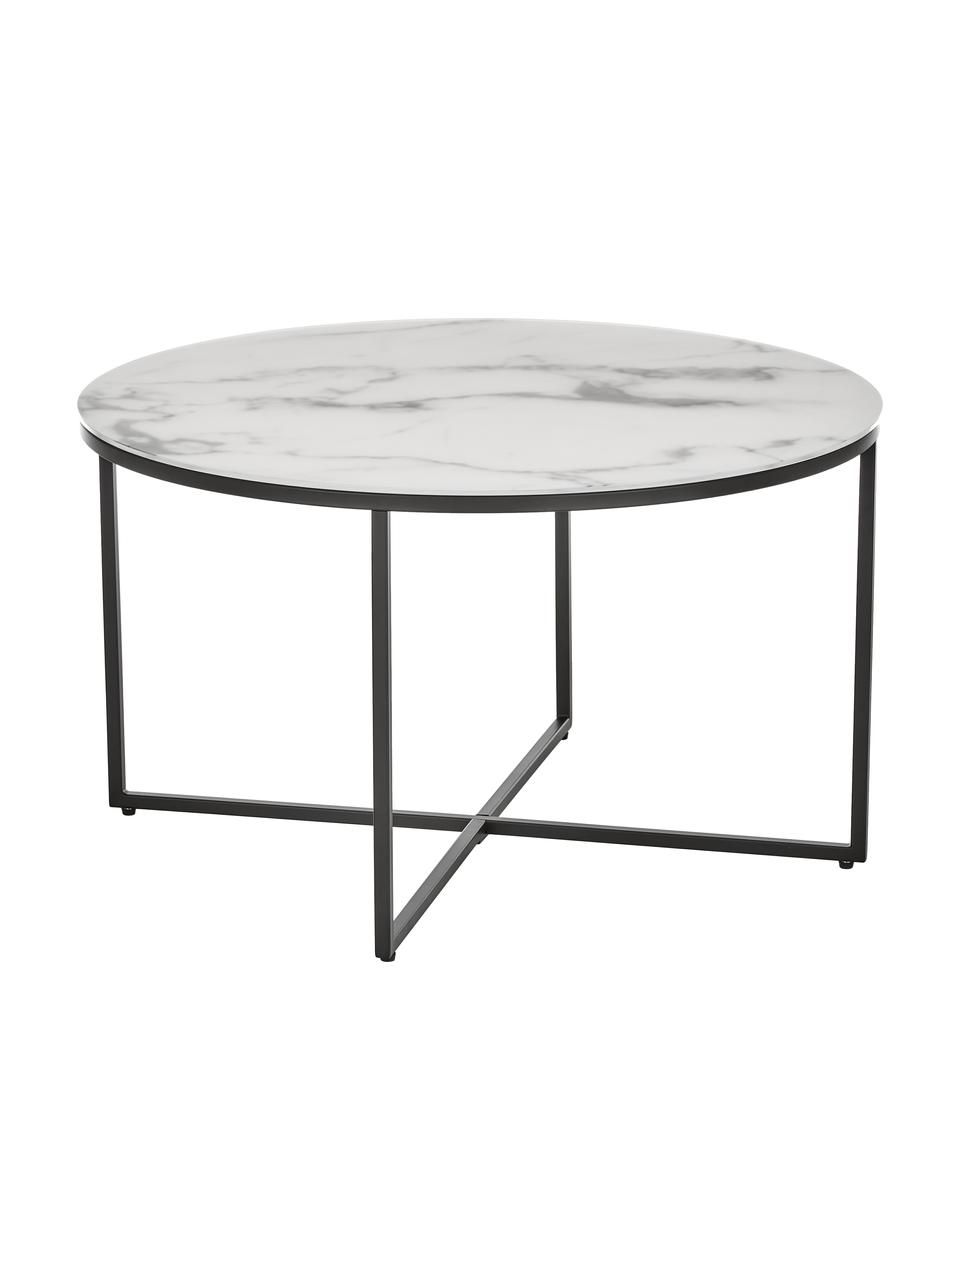 Tavolino rotondo da salotto con piano in vetro effetto marmo Antigua, Struttura: acciaio verniciato a polv, Bianco effetto marmo. nero, Ø 80 cm